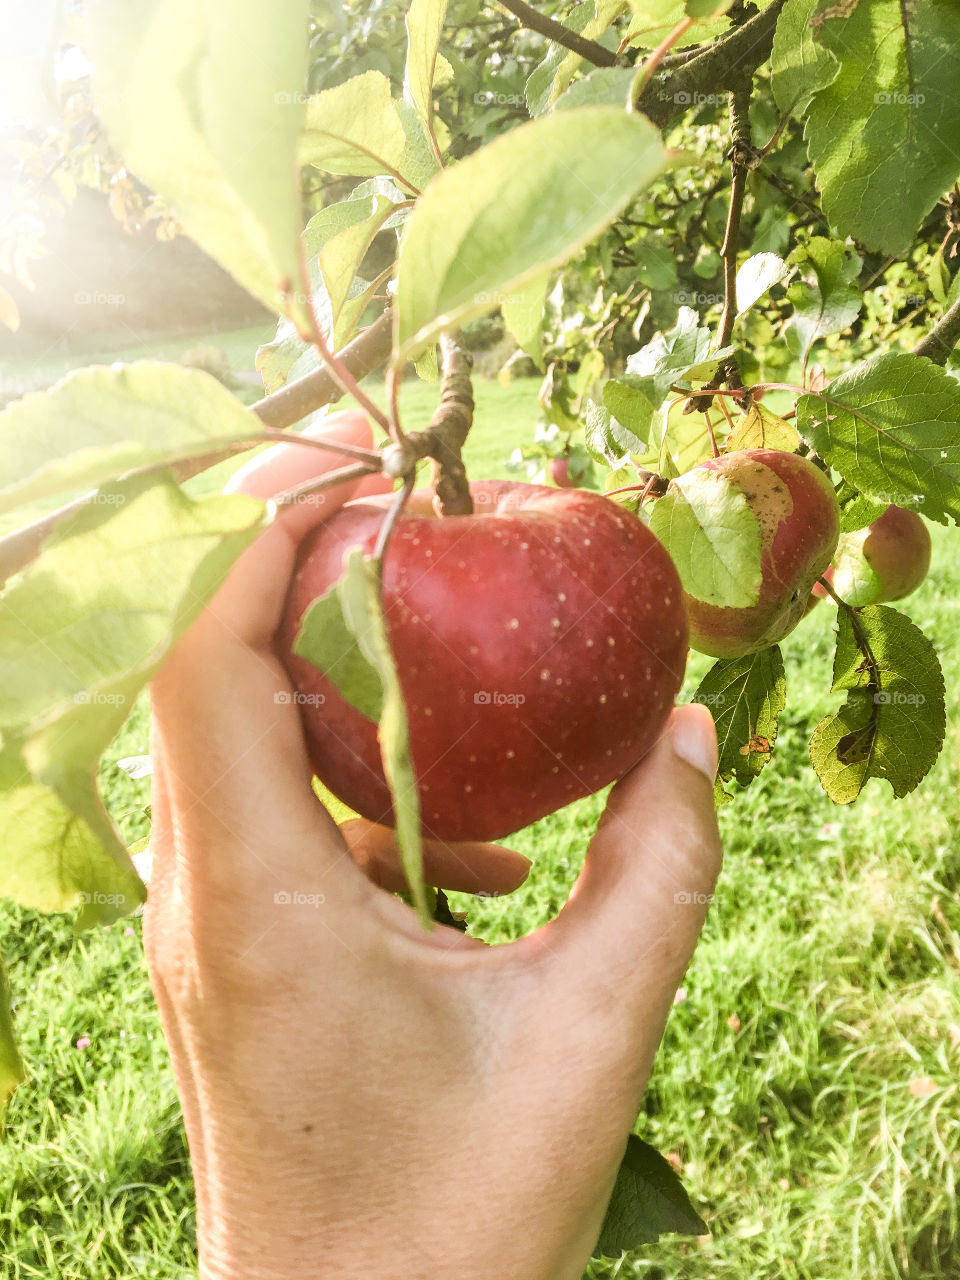 Apple harvest 